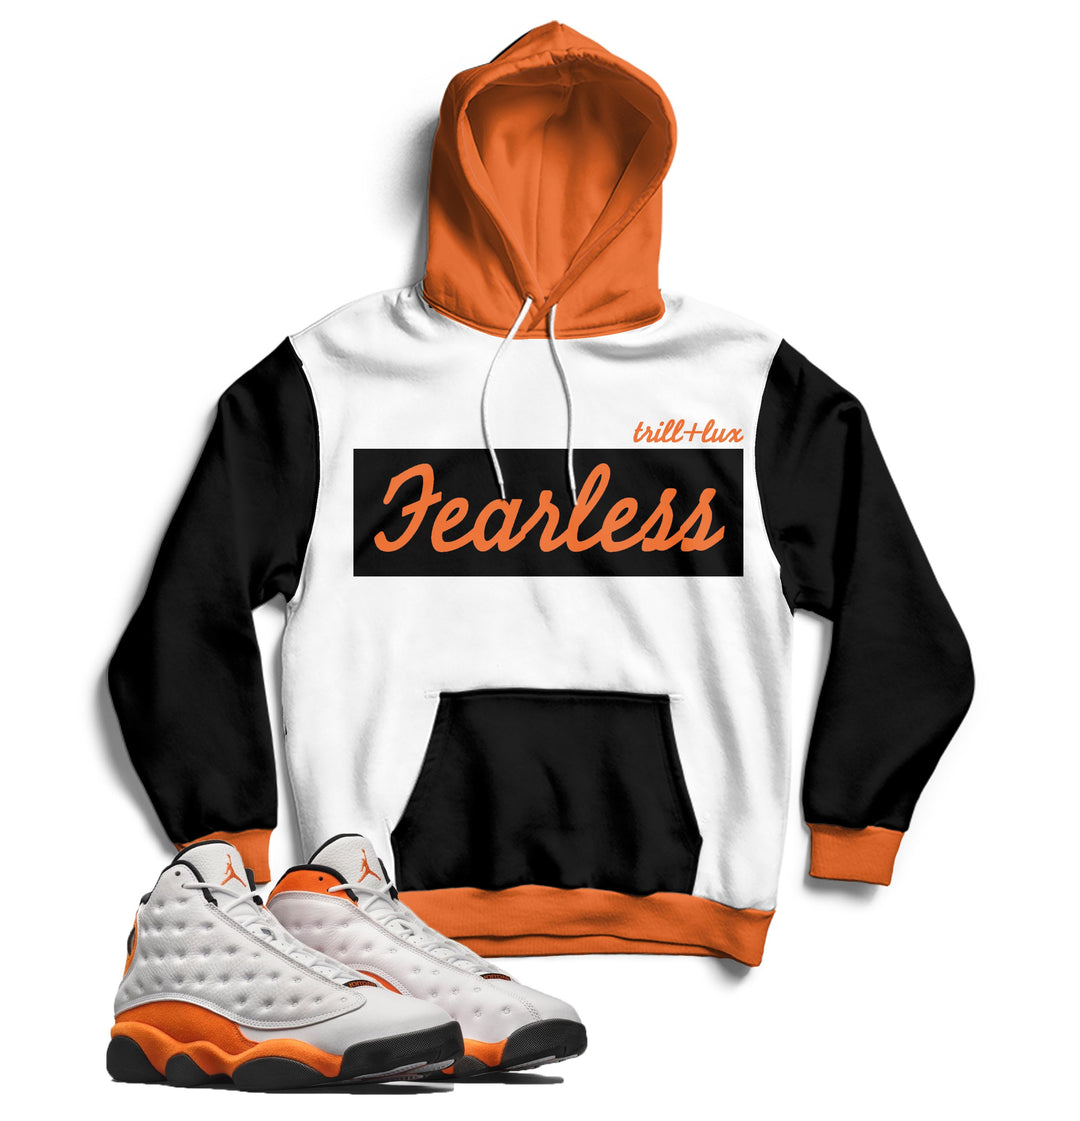 Fearless | Air Jordan 13 Starfish Inspired Hoodie |